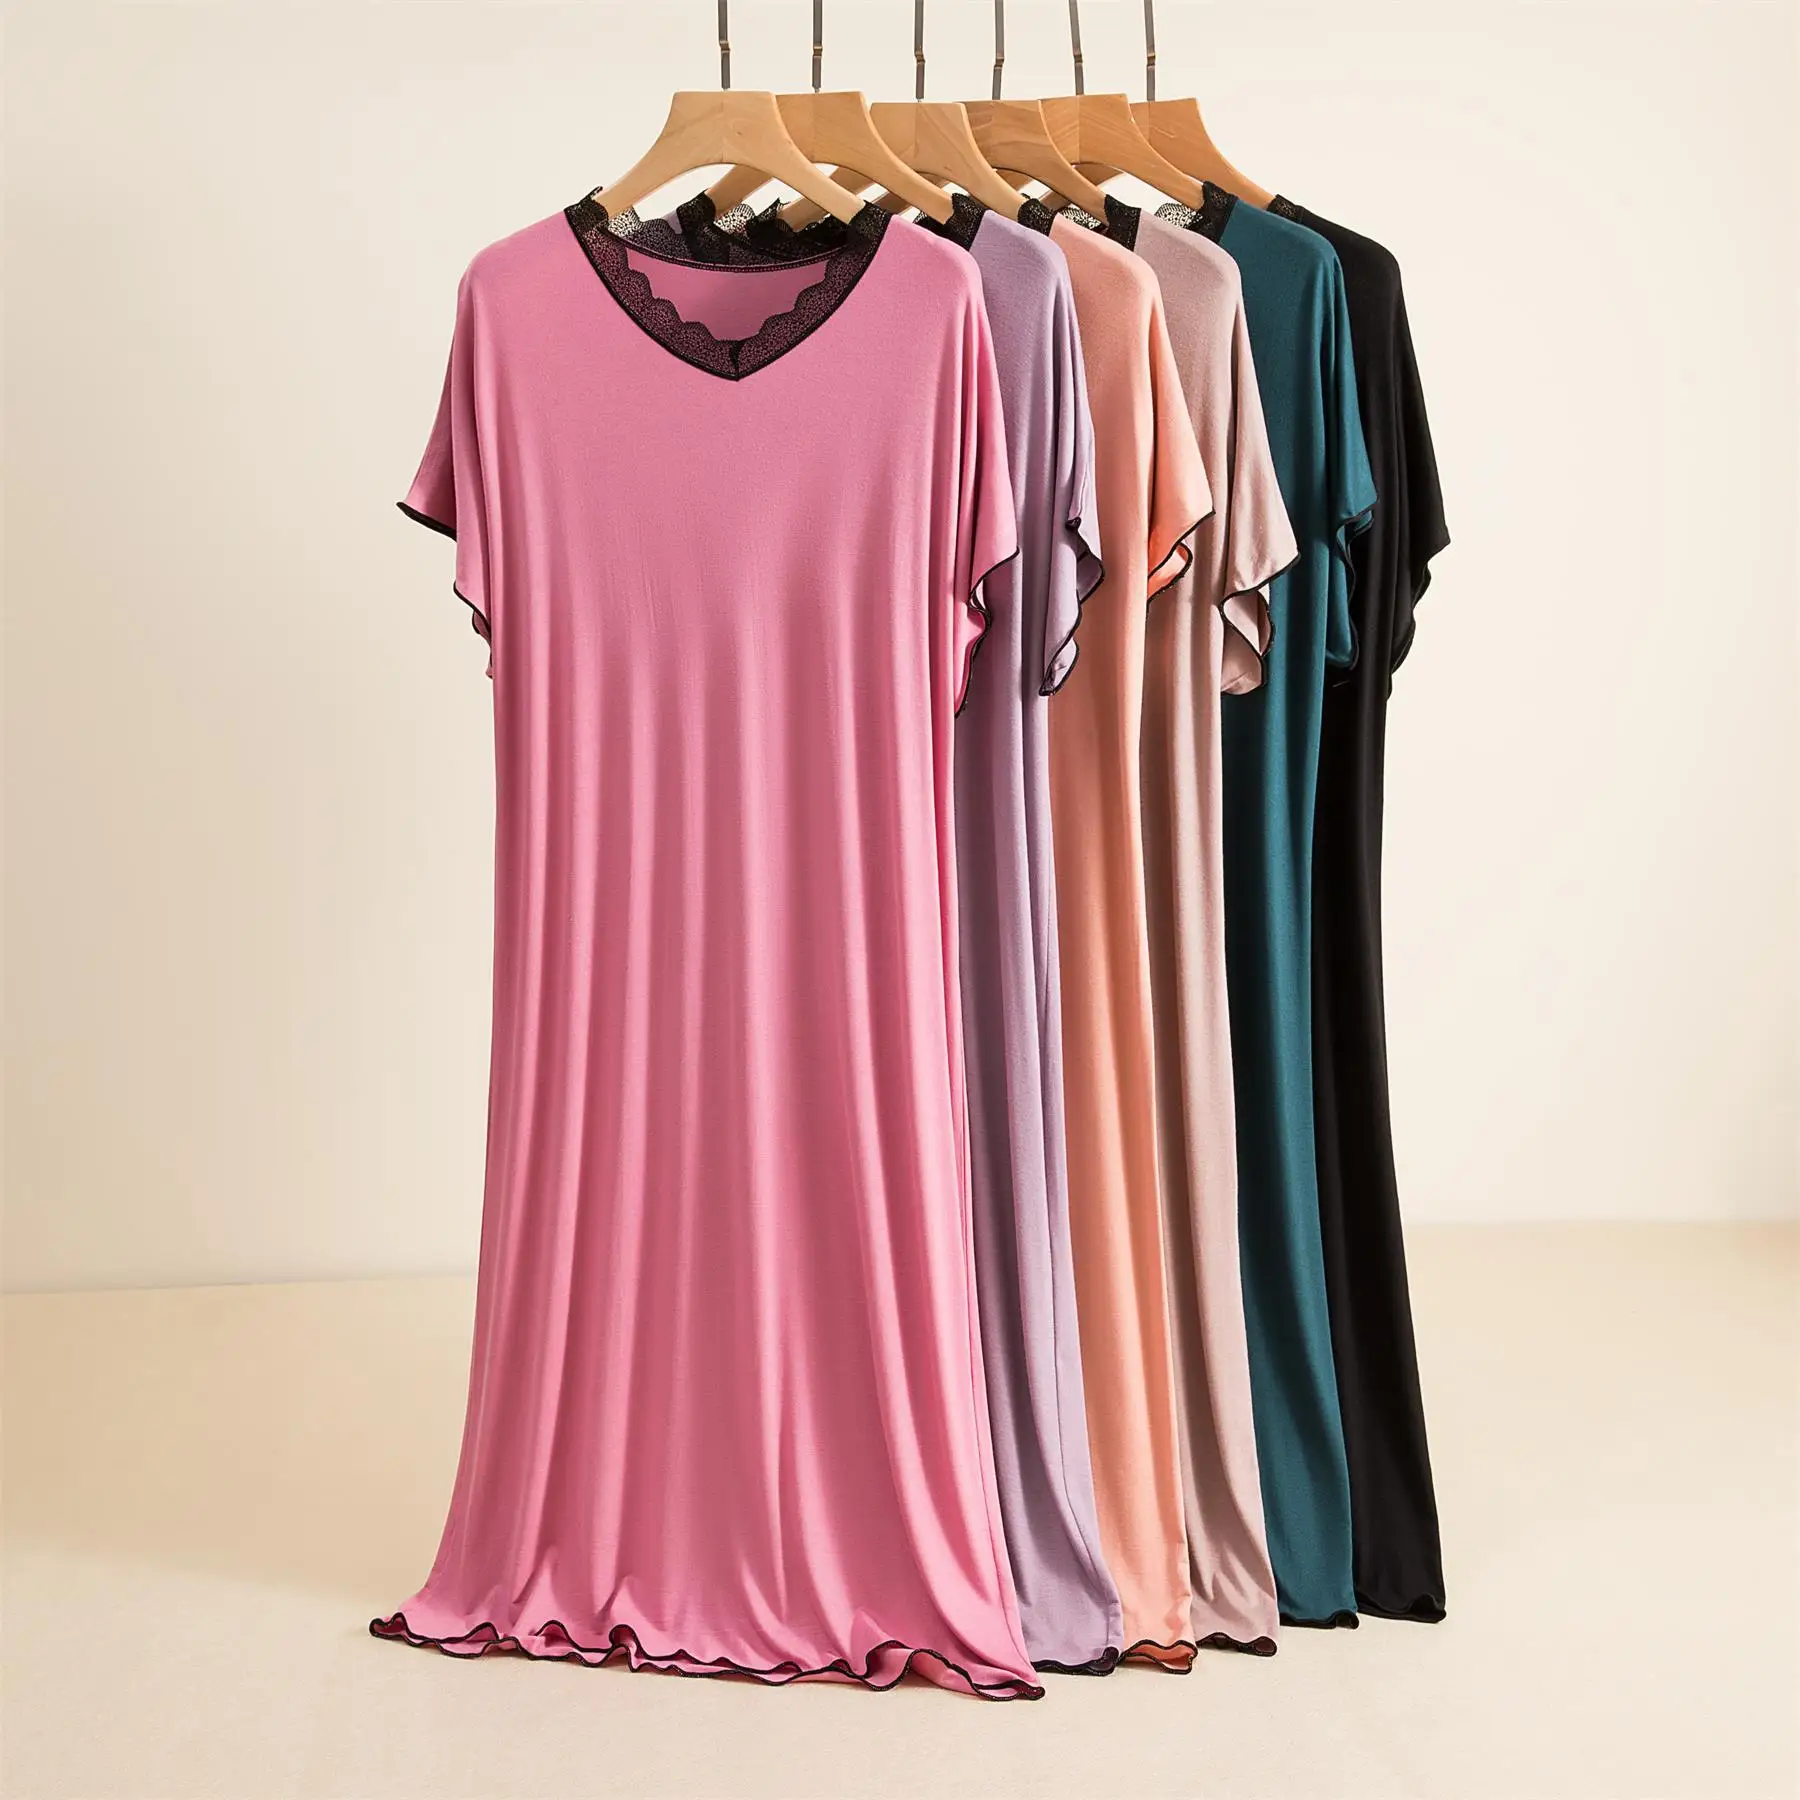 

New Lace Collar Nightgown Summer Women's Night Dress Short Sleeve Sleepwear Home Wear V-neck Nightwear Chemise De Nuit Femme